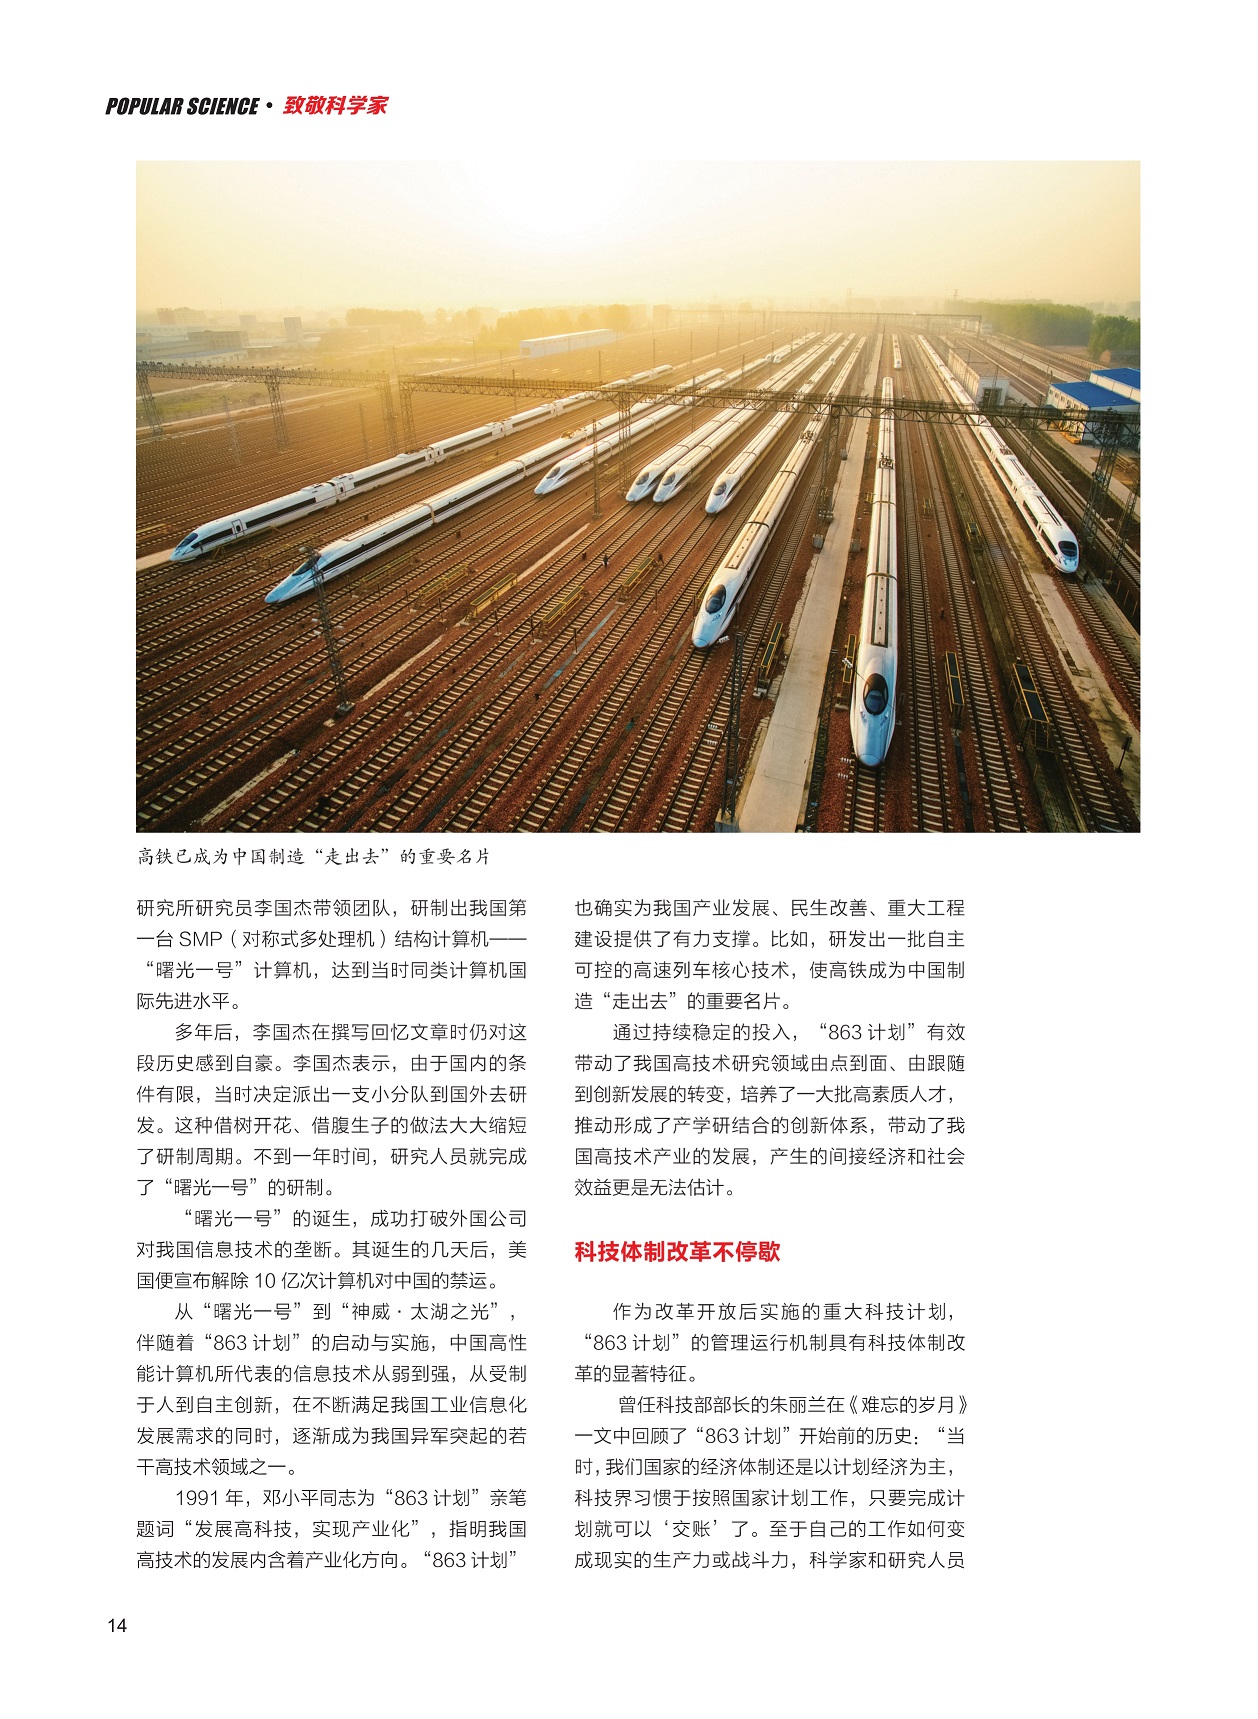 高铁已成为中国制造“走出去”的重要名片,科技体制改革不停歇